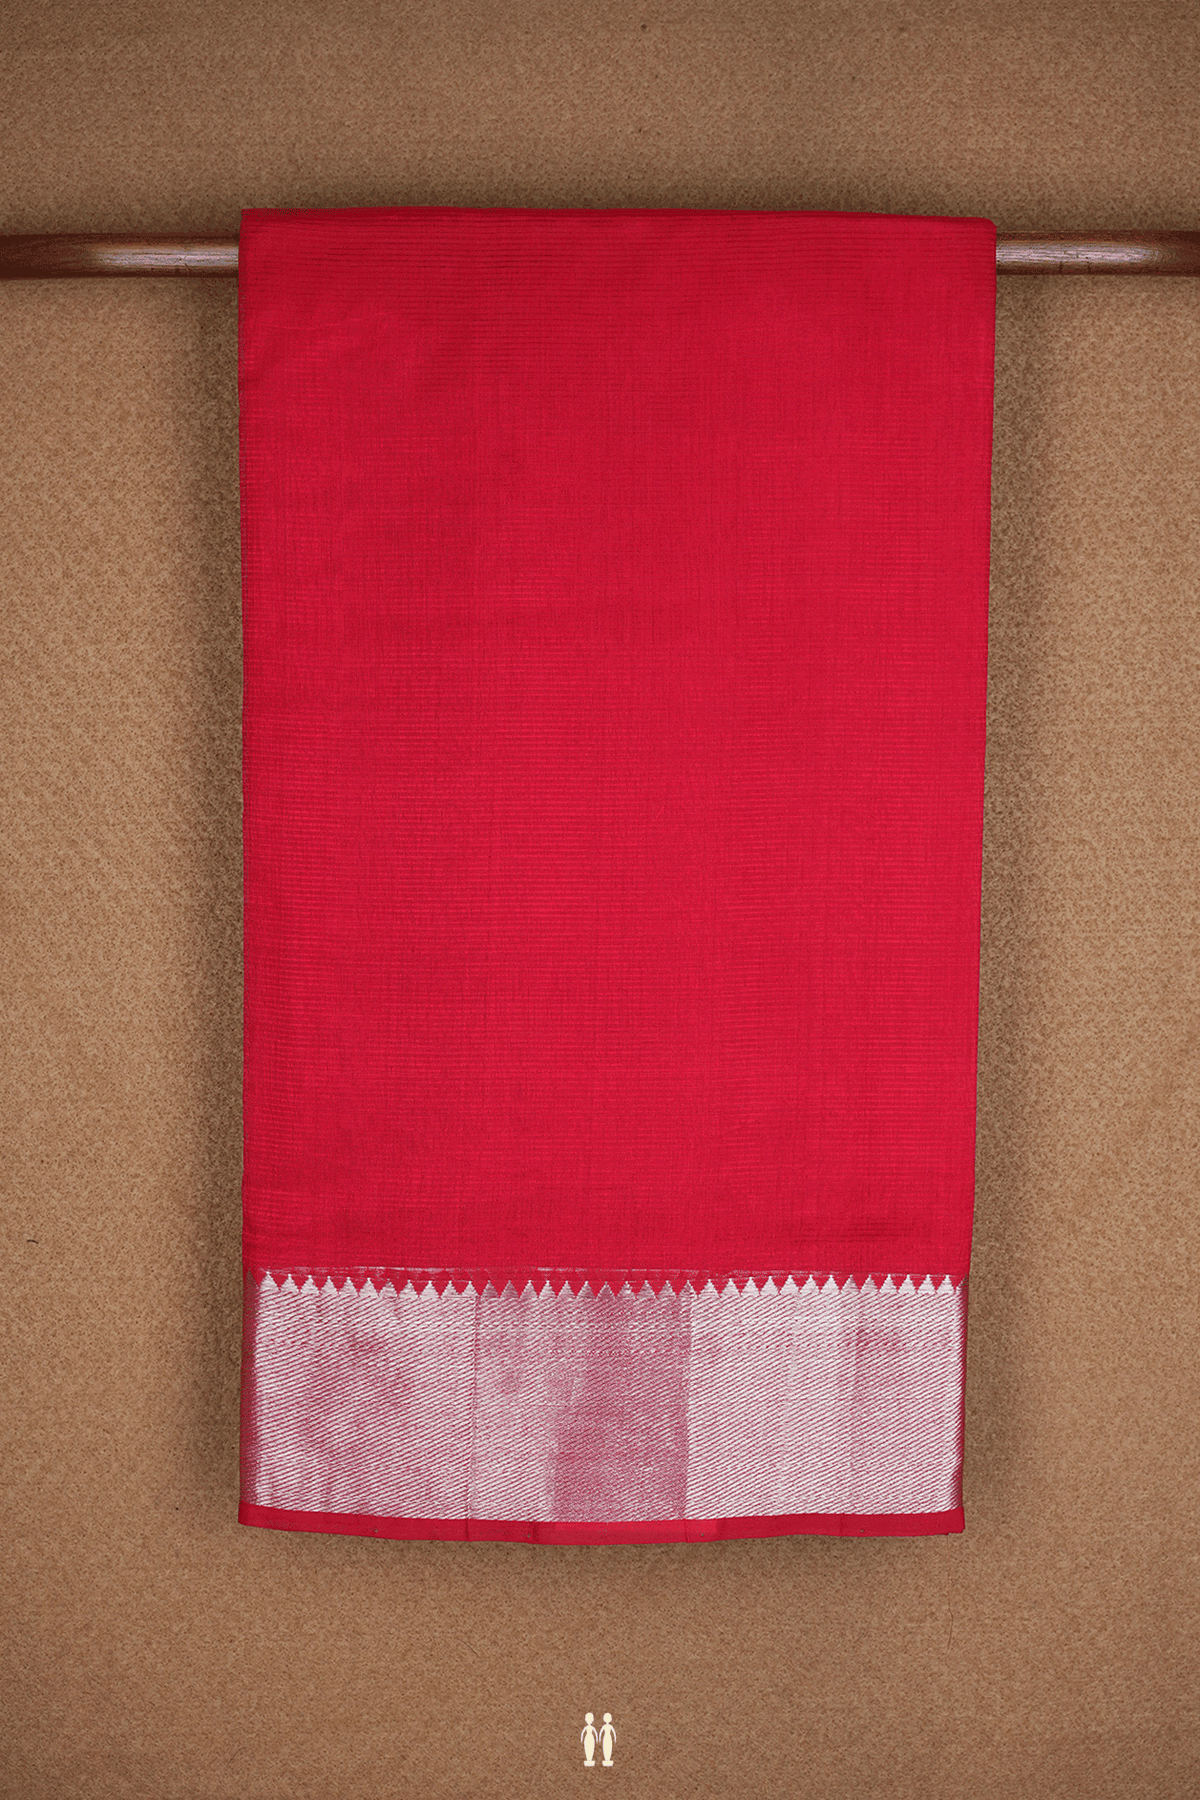 Twill Weave Zari Border Chilli Red Mangalagiri Silk Saree